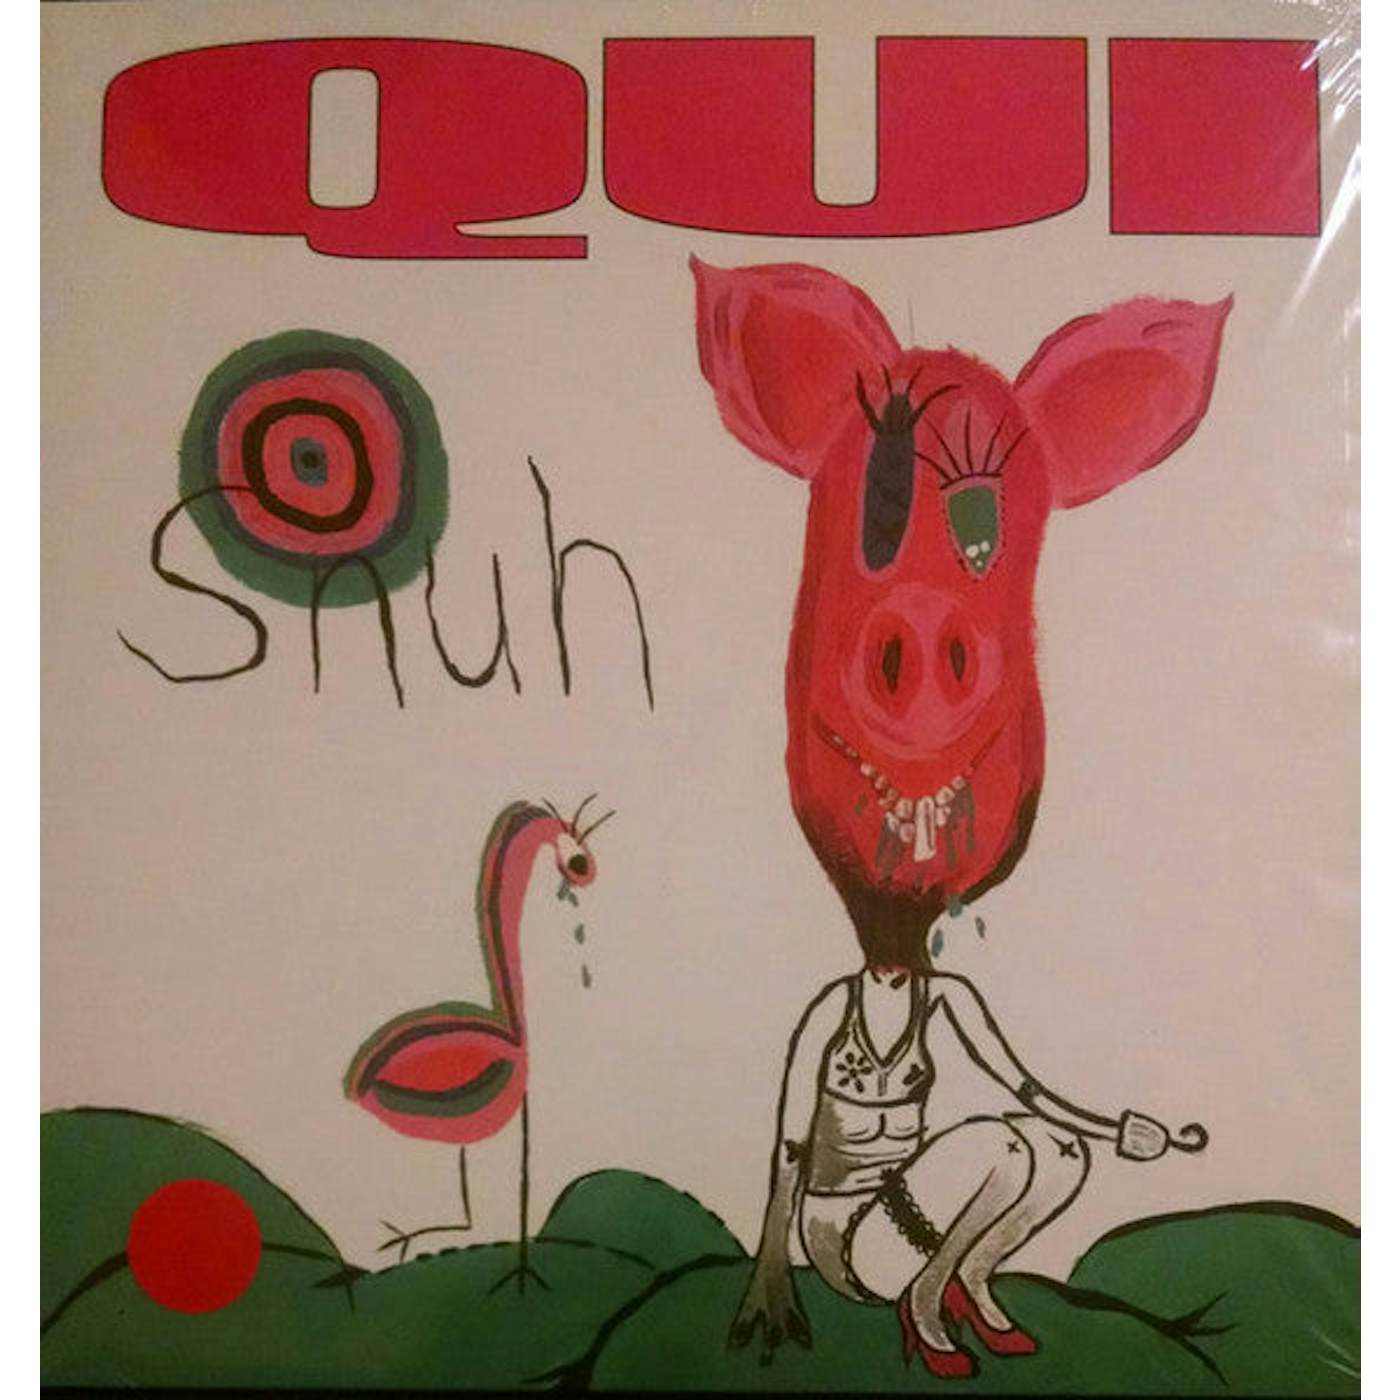 Qui – Snuh lp (Vinyl)